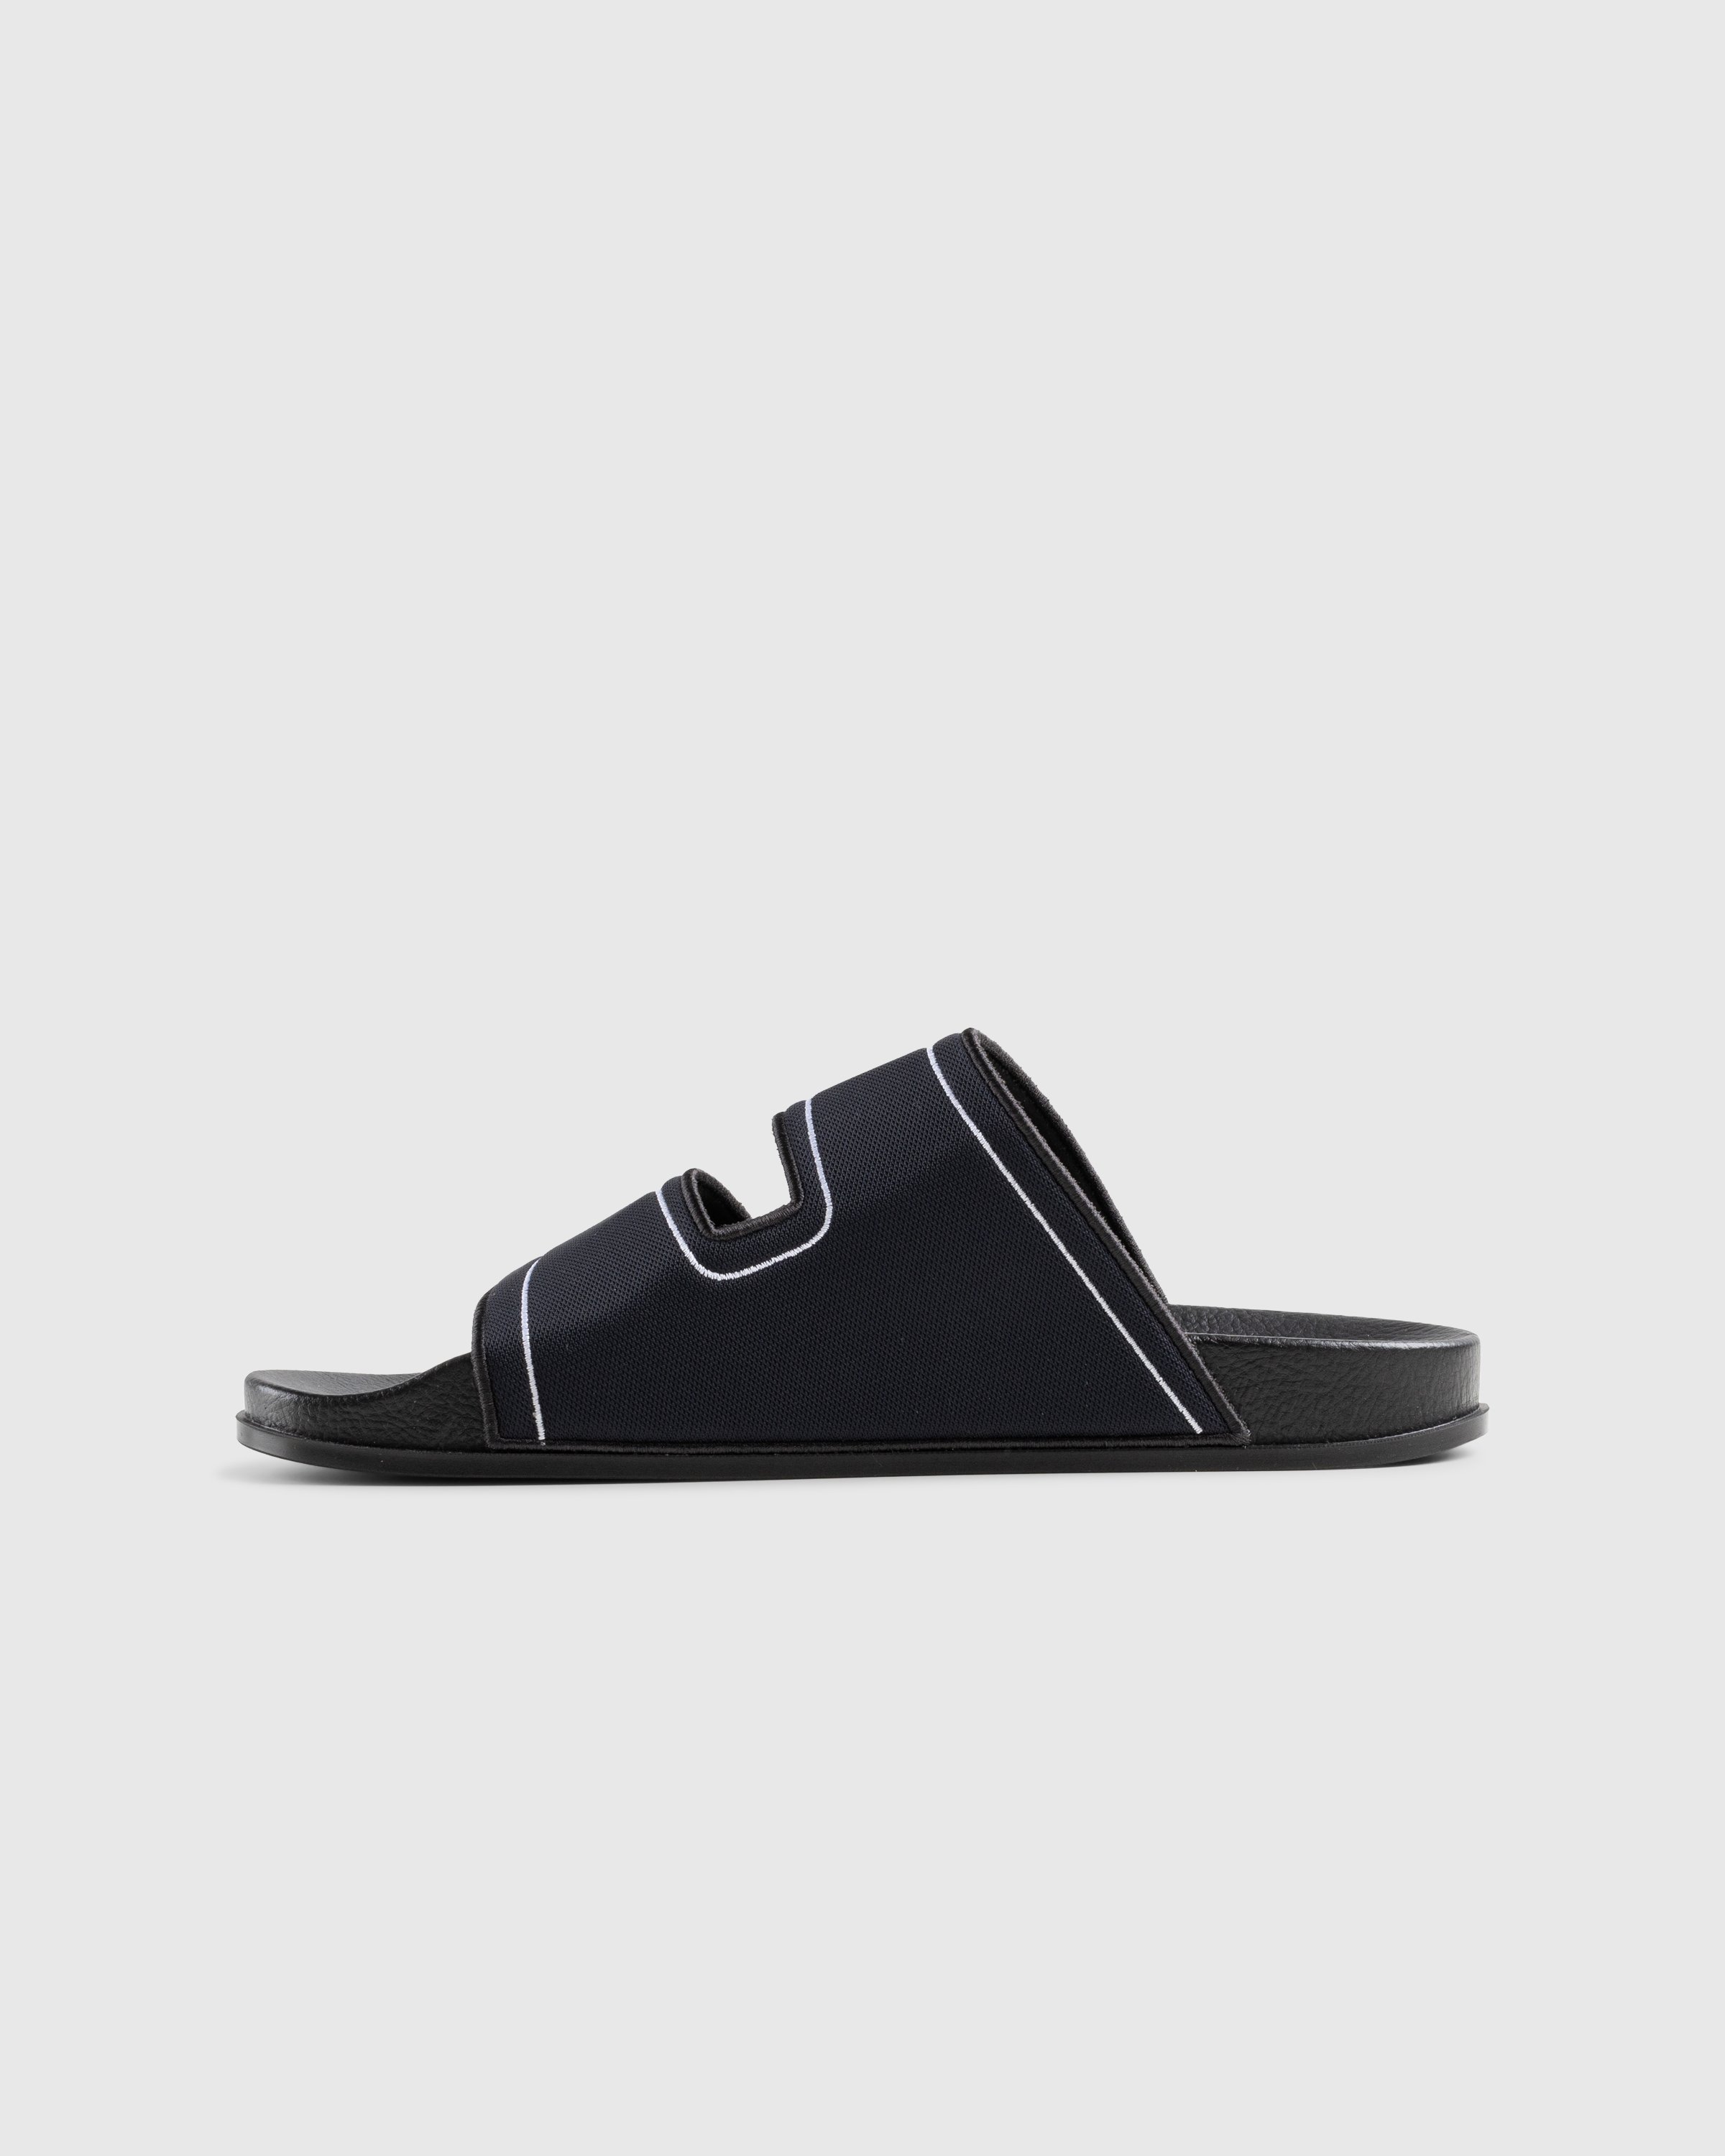 Marni - Sandal Black - Footwear - Black - Image 2